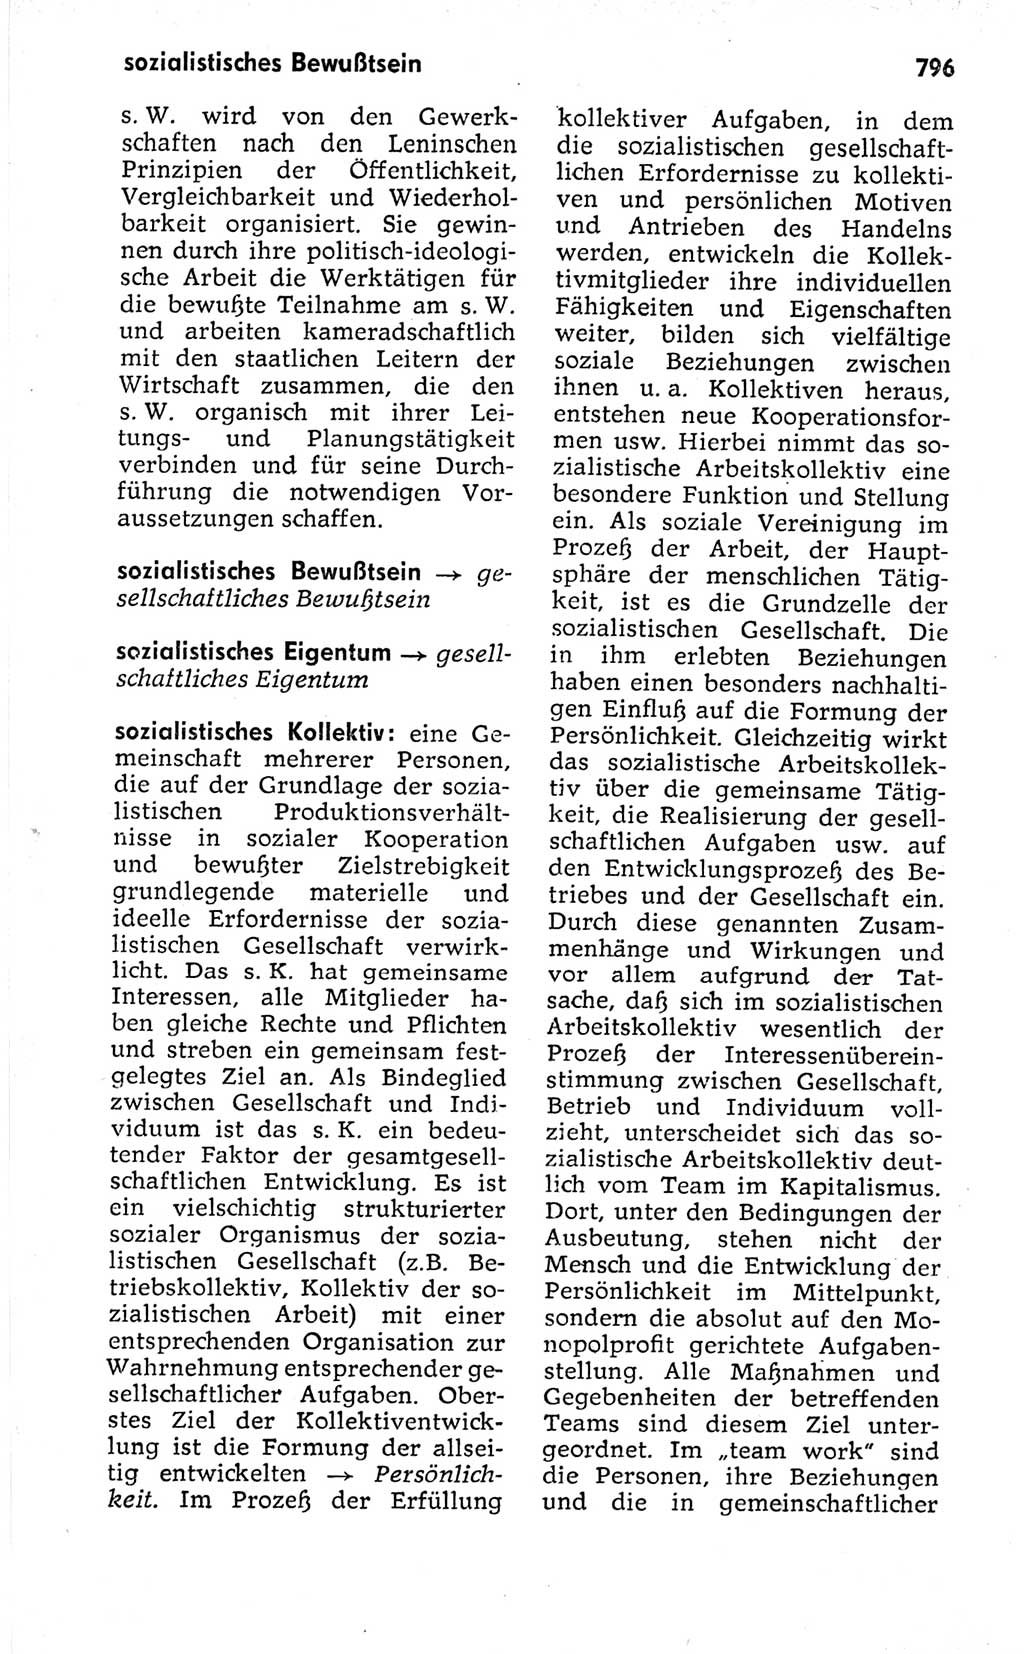 Kleines politisches Wörterbuch [Deutsche Demokratische Republik (DDR)] 1973, Seite 796 (Kl. pol. Wb. DDR 1973, S. 796)